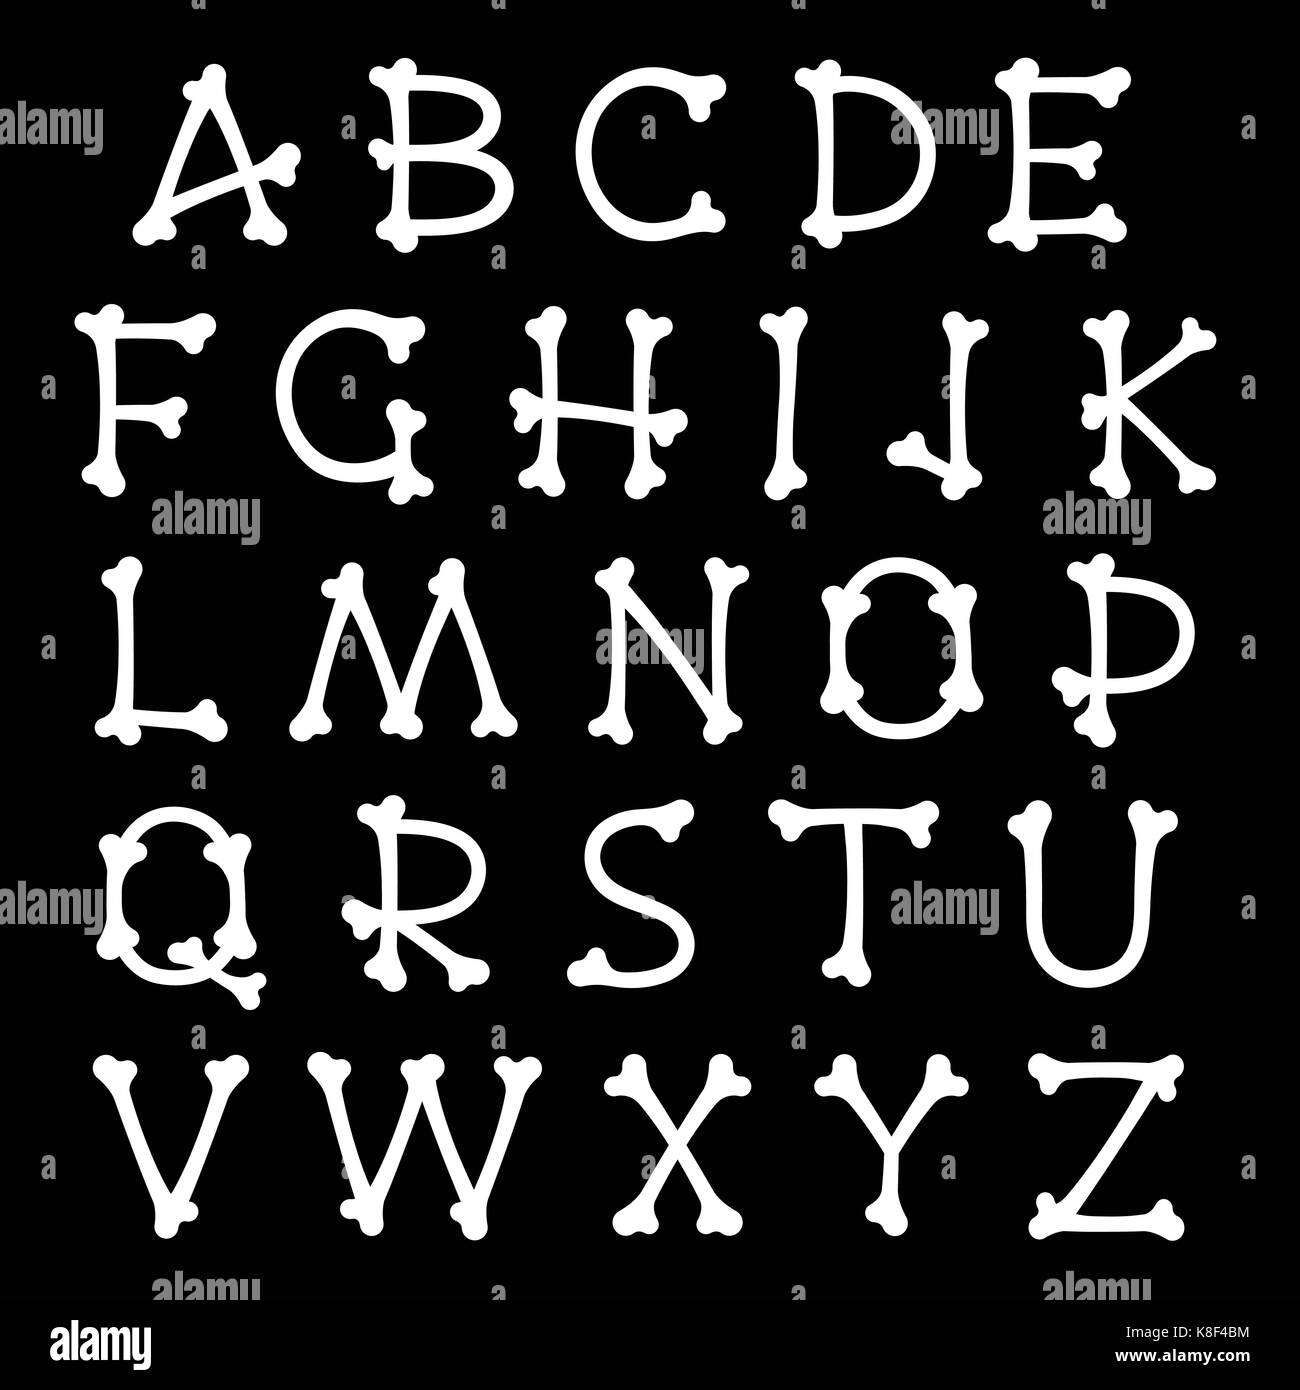 Vector set complet d'os blancs silhouettes majuscules lettres alphabet isolated on black pour l'halloween, pirates, de médecine et d'horreur, concepts desig Illustration de Vecteur